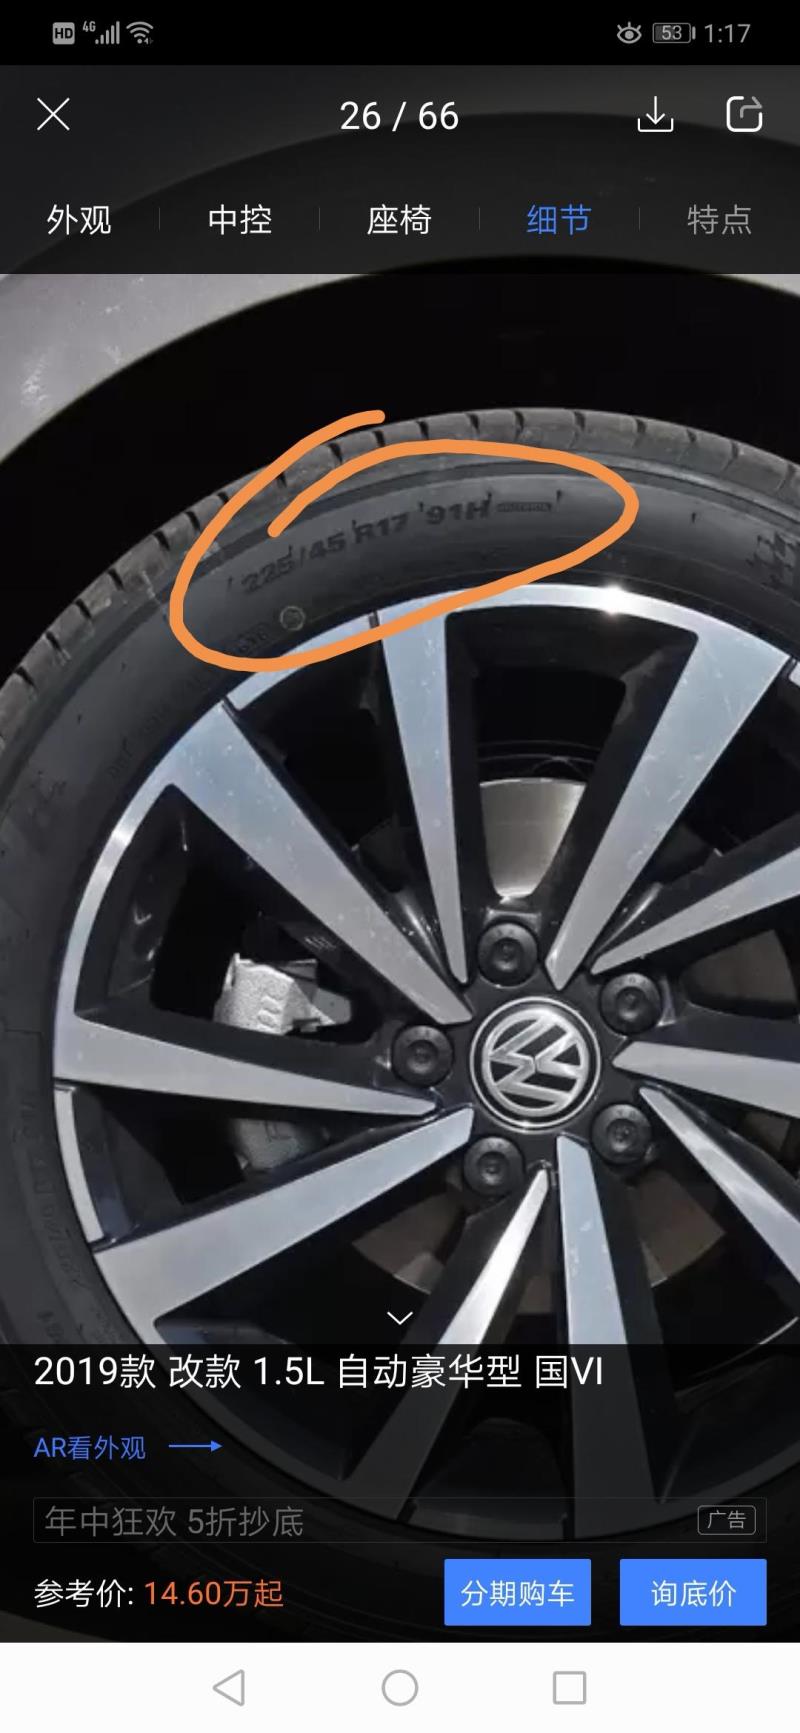 全新宝来2019款1.5L自动豪华版国六，轮毂跟轮胎尺寸方面图片和配置表不一样啊，原厂出来到底是什么样的，跟自动舒适版是一样的样式吗